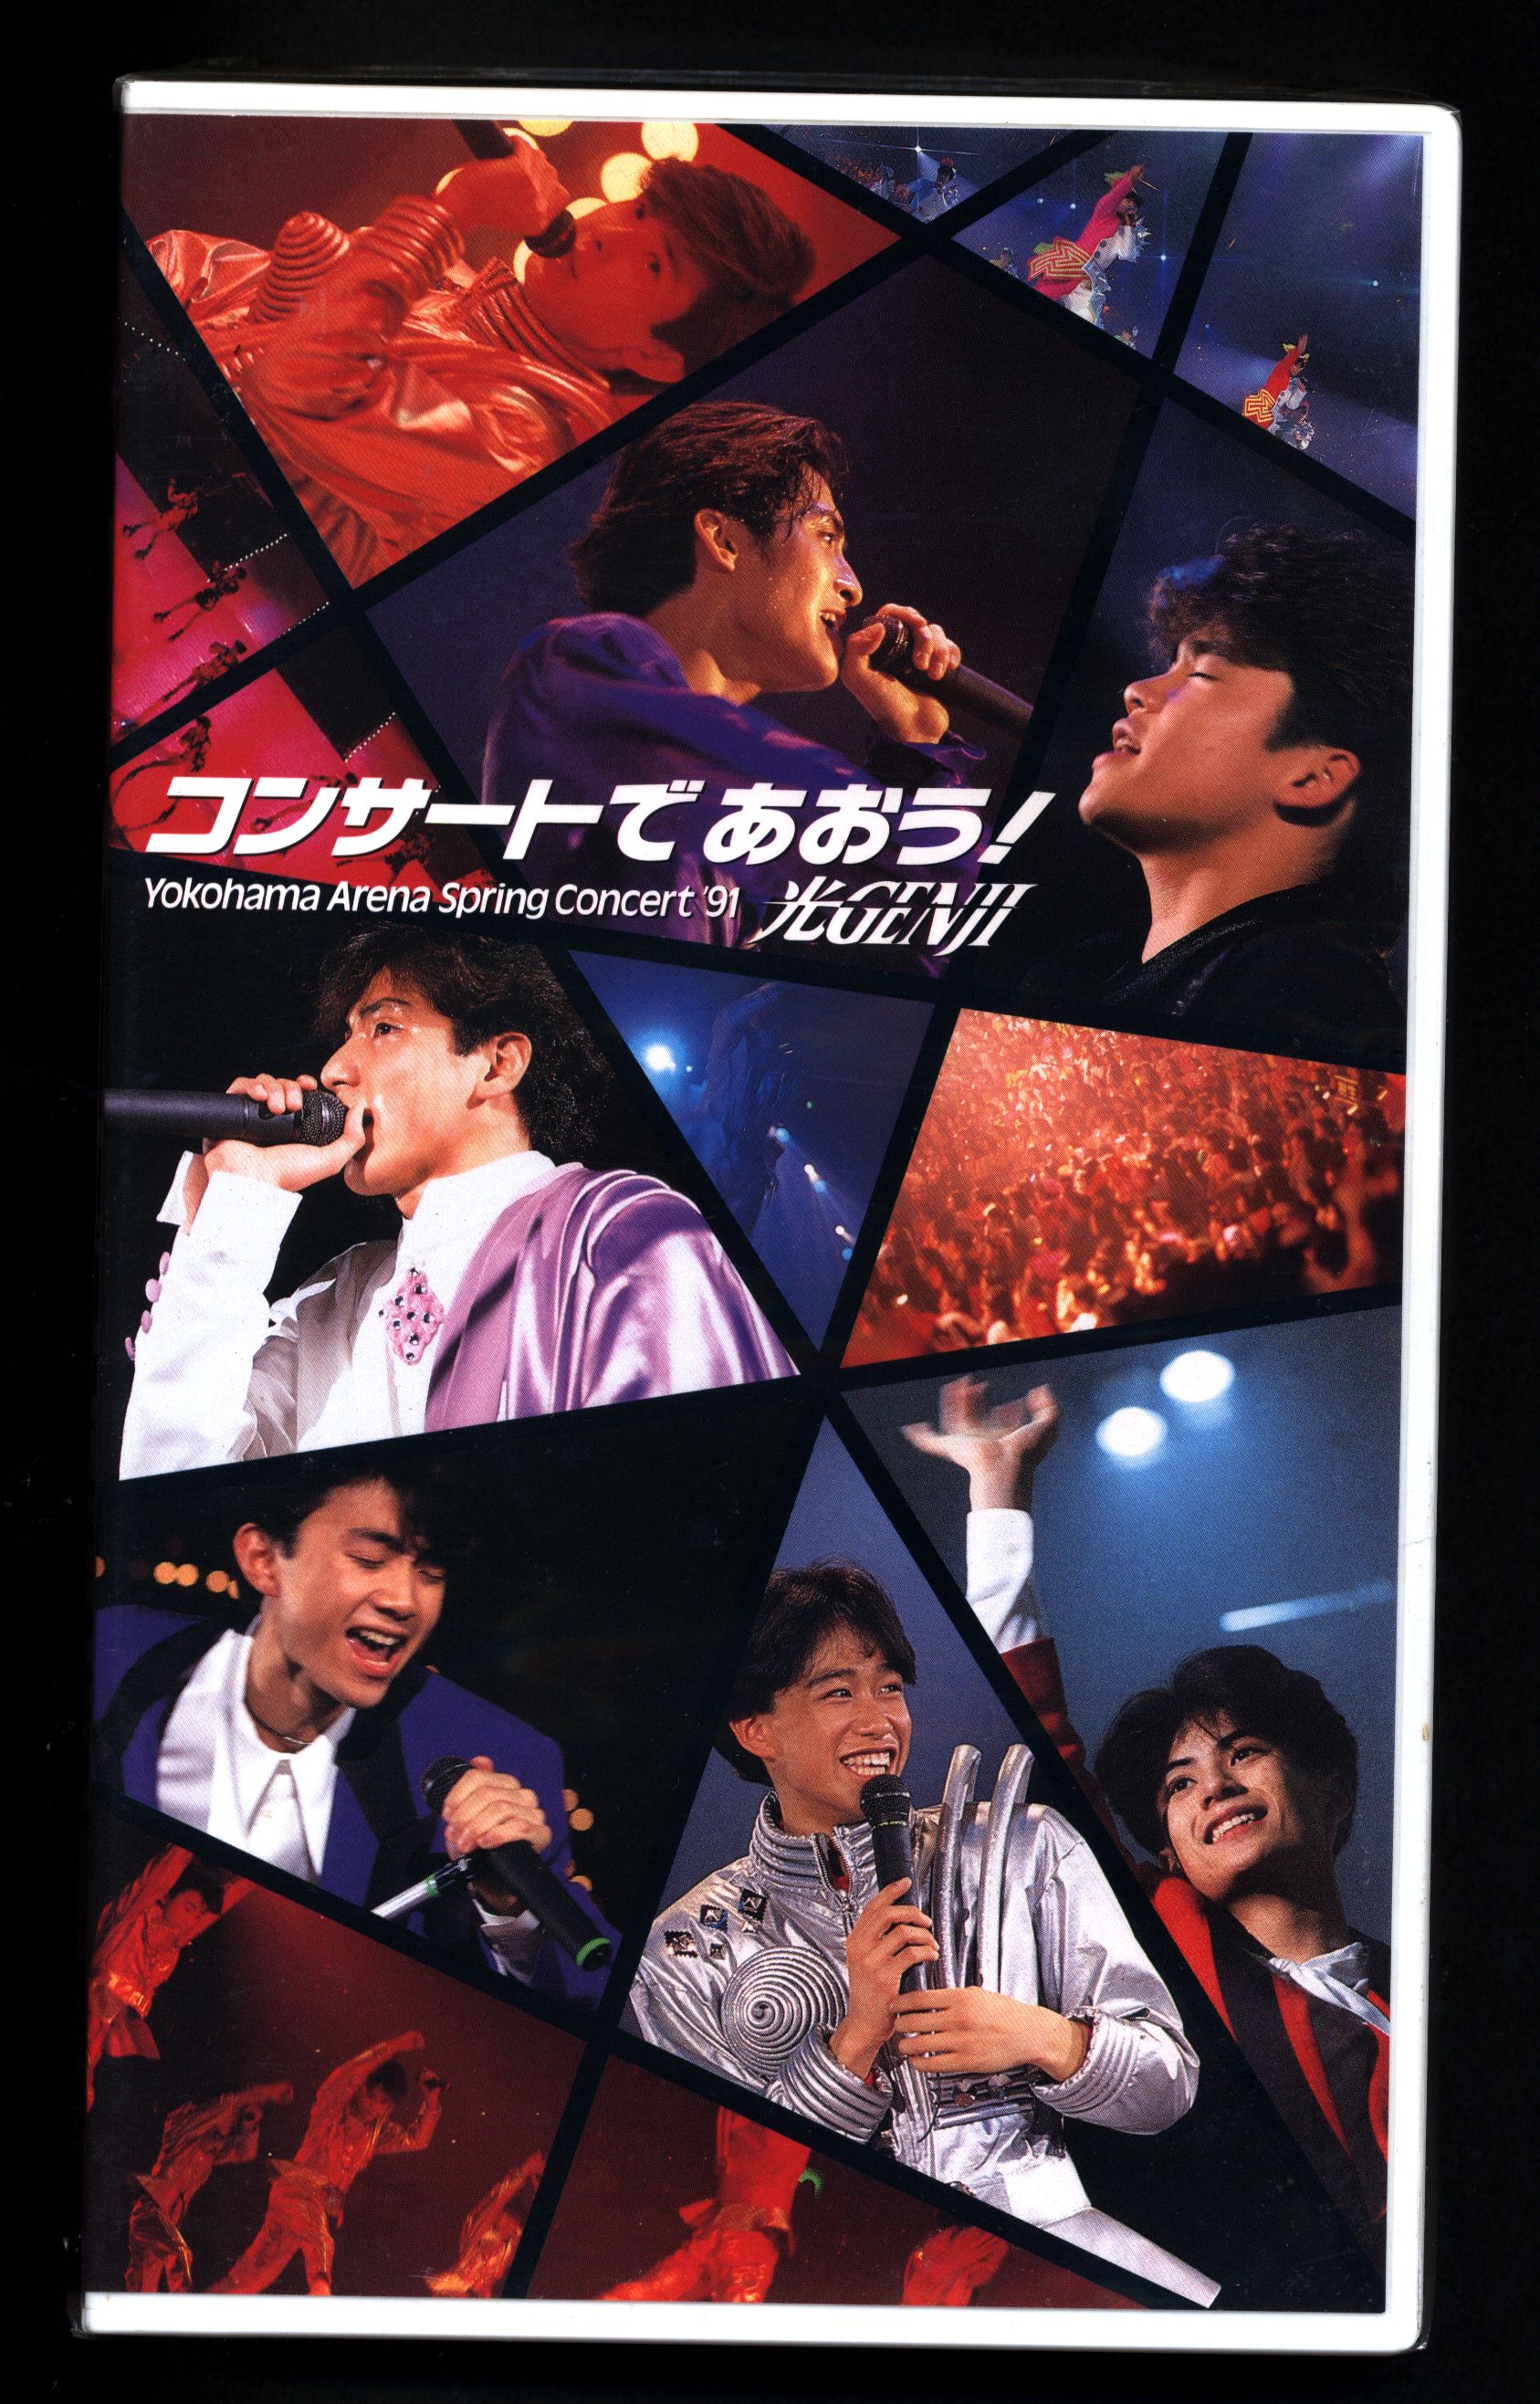 光GENJI「コンサートであおう!」DVD-